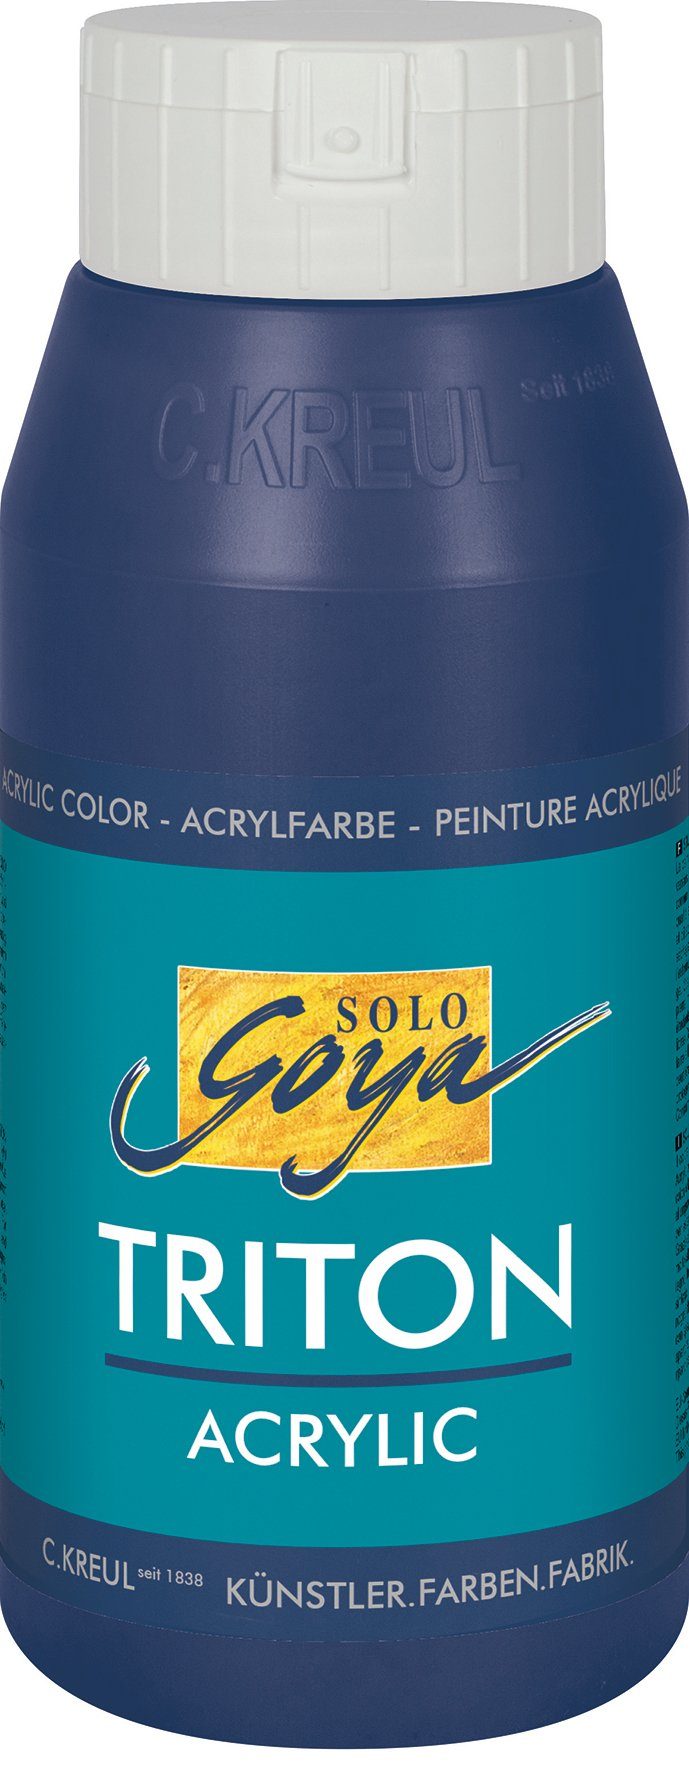 Kreul Acrylfarbe Solo Goya Triton Acrylic, 750 ml Dunkelblau